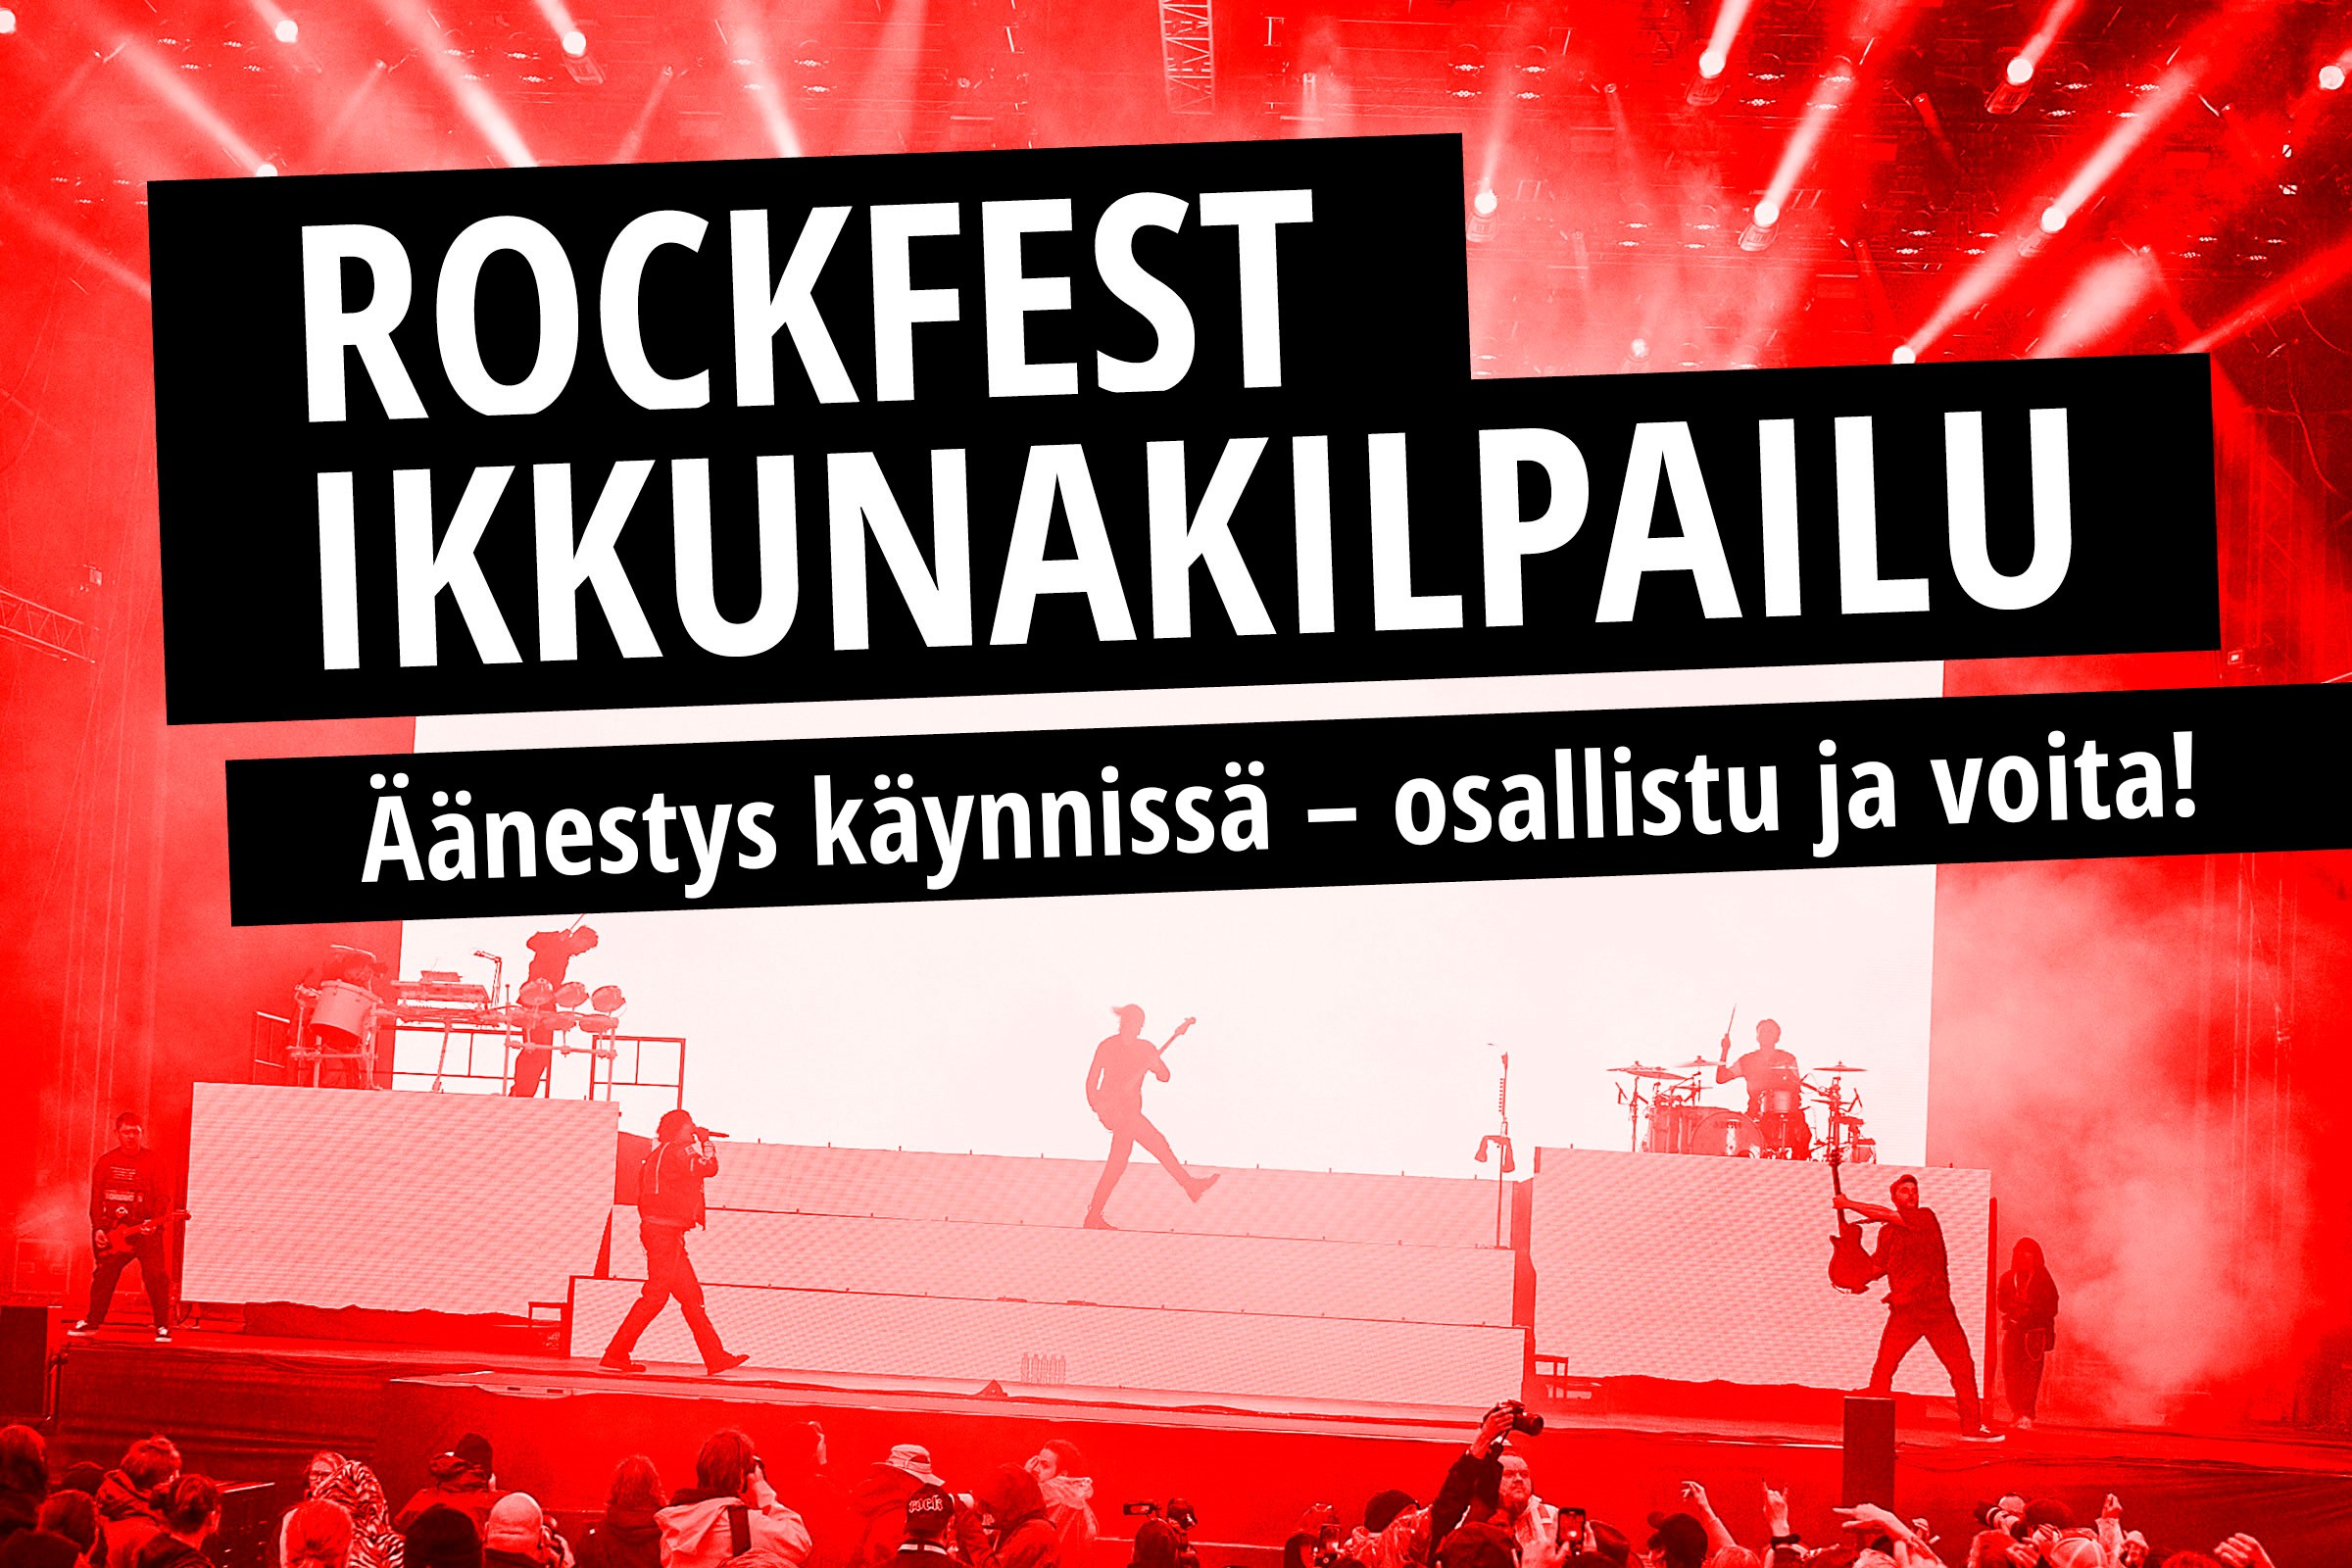 Rockfest_ikkunat